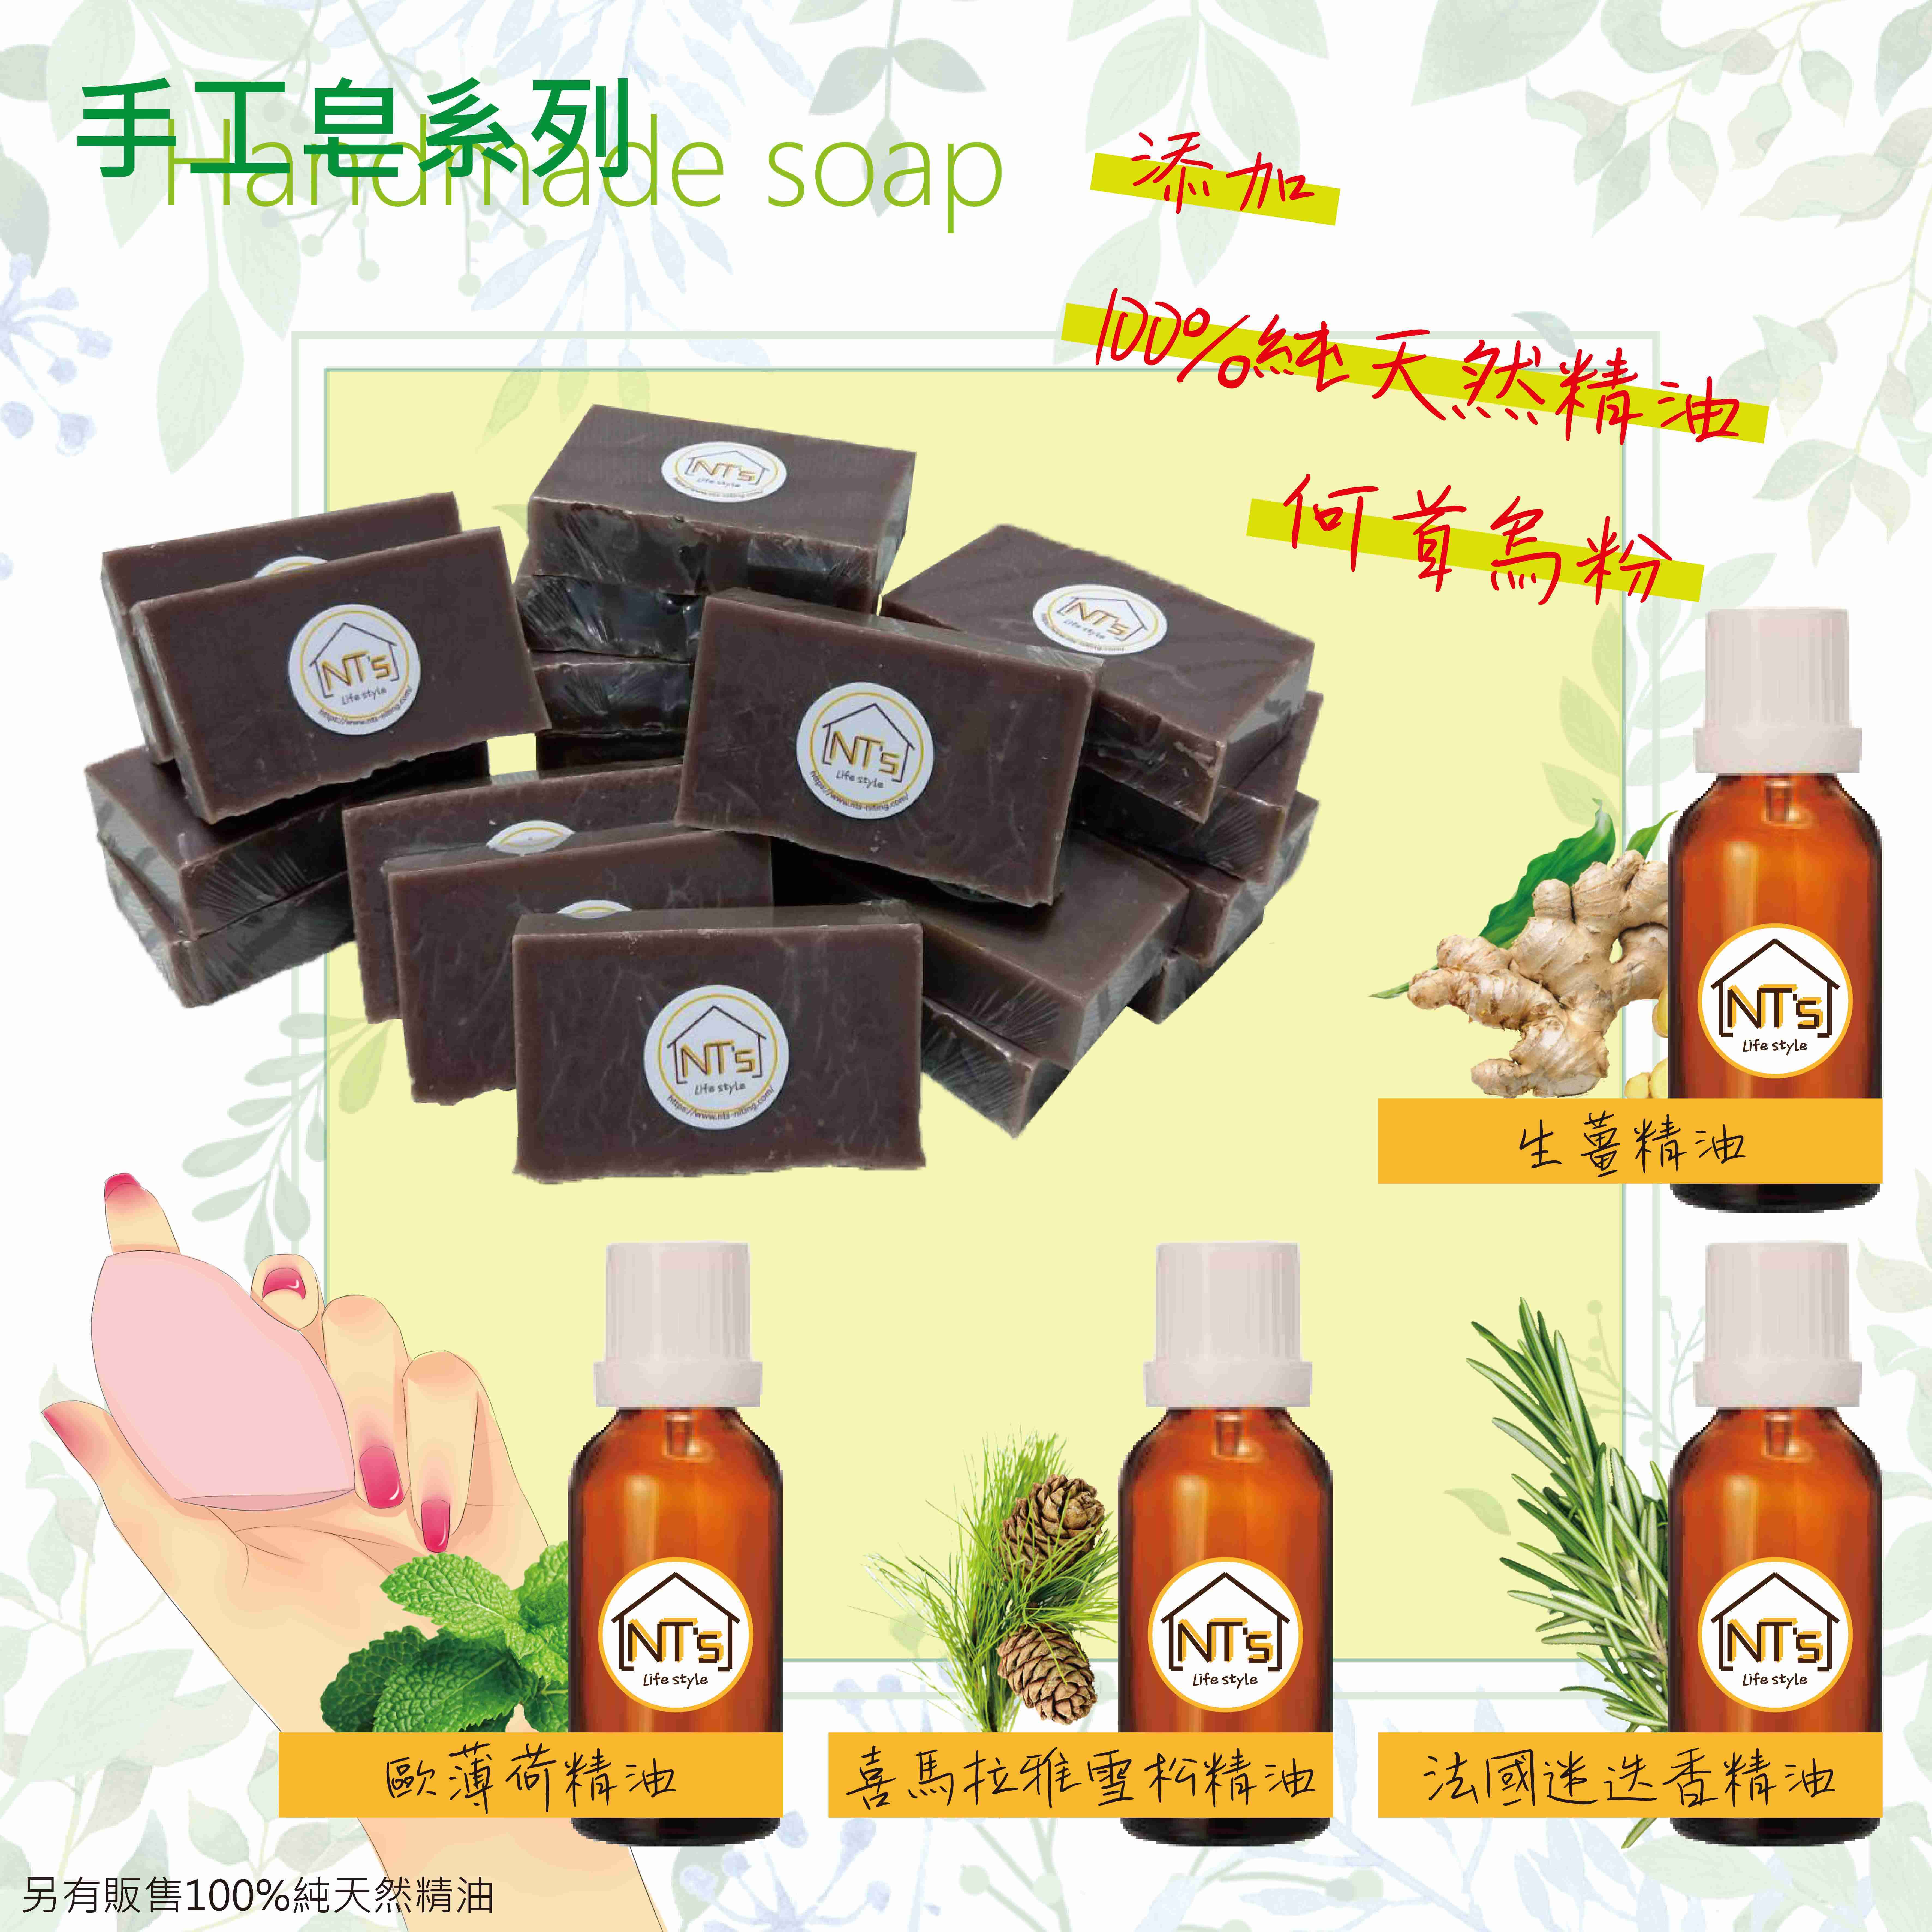 何首烏洗髮皂(手工皂) Handmade soap